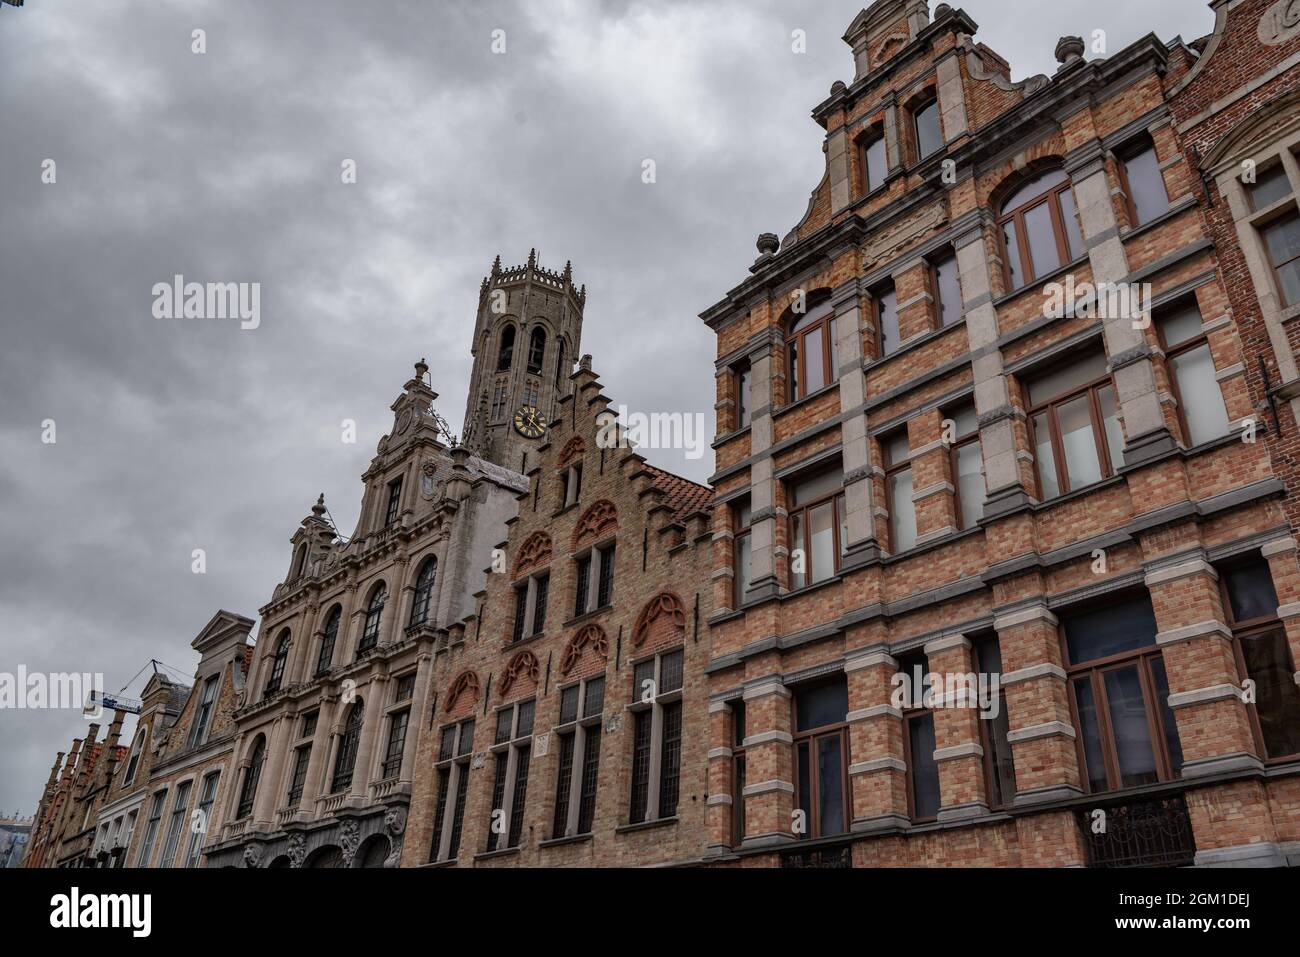 Steenstraat and Belfort, Brugge-Bruges, Belgium Stock Photo